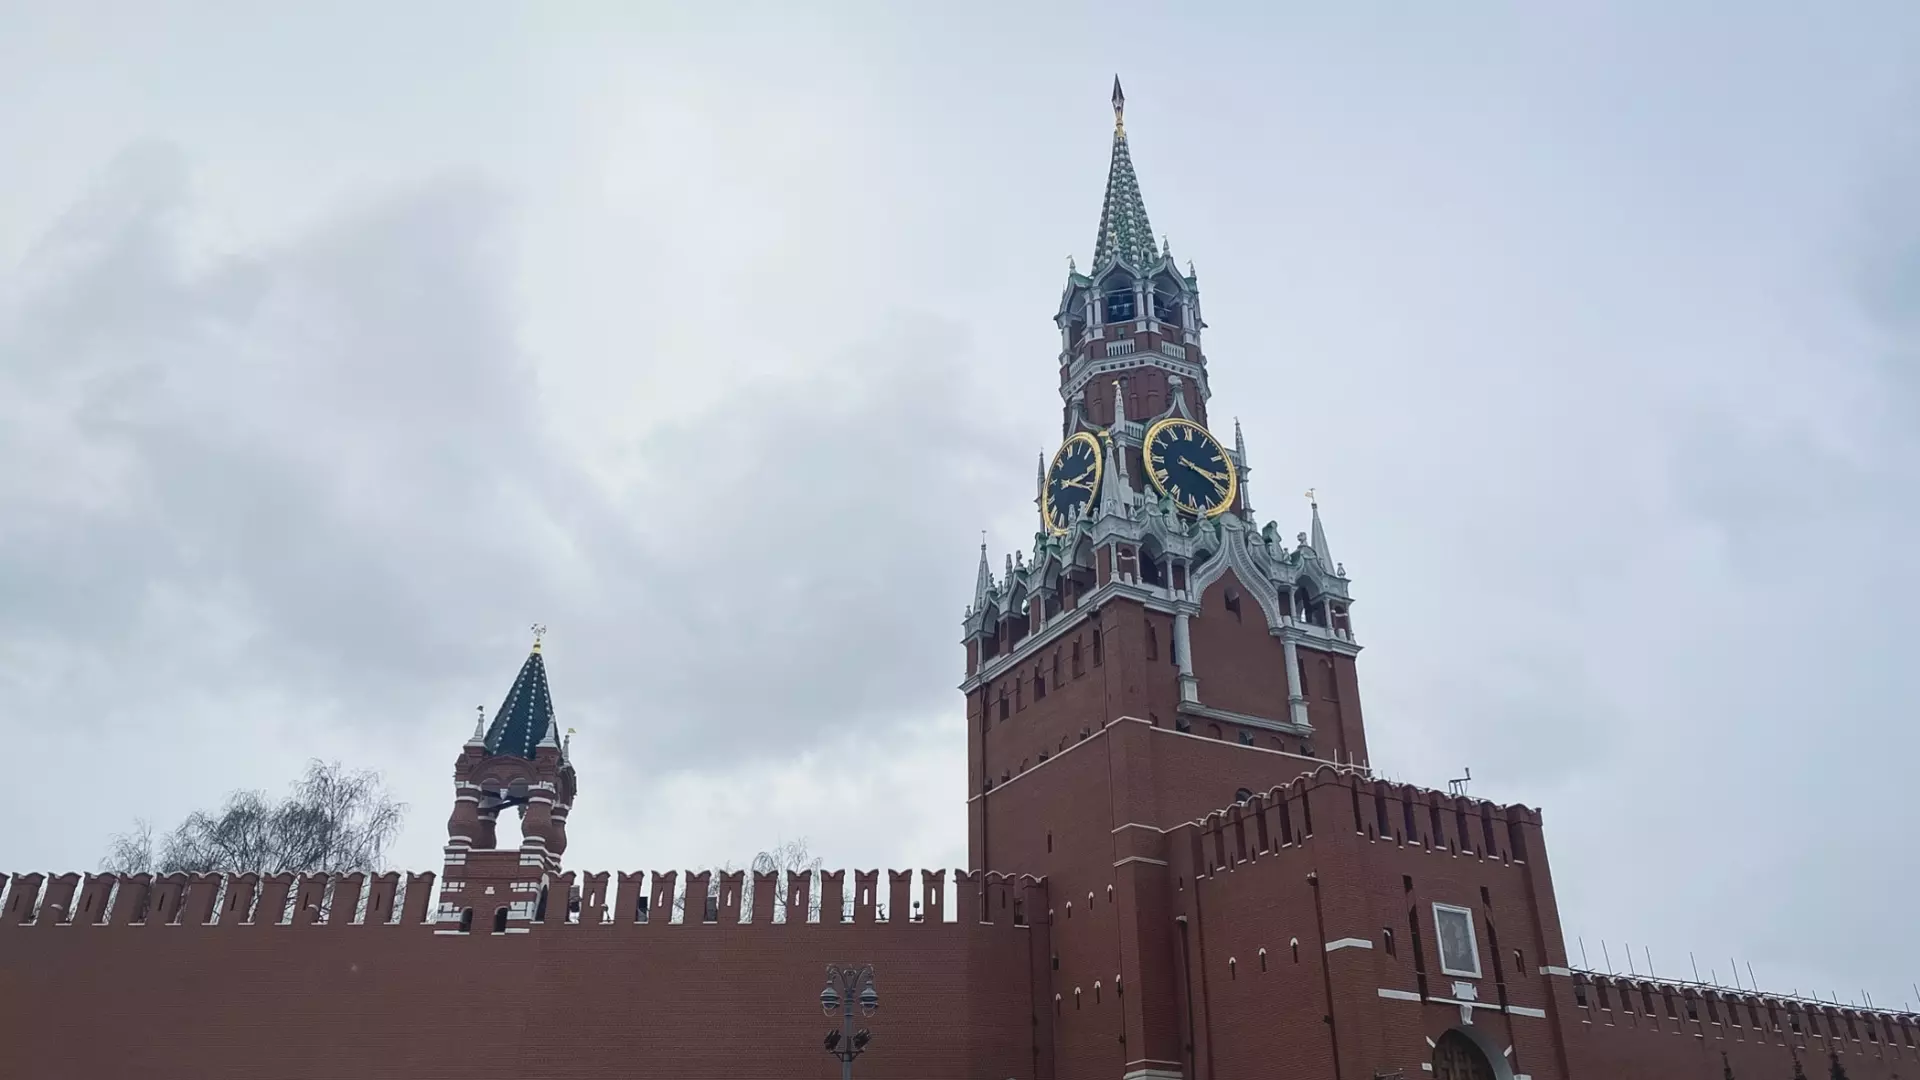 Опрос: выставка «Россия» пробудила чувство гордости за Родину у 97% посетителей